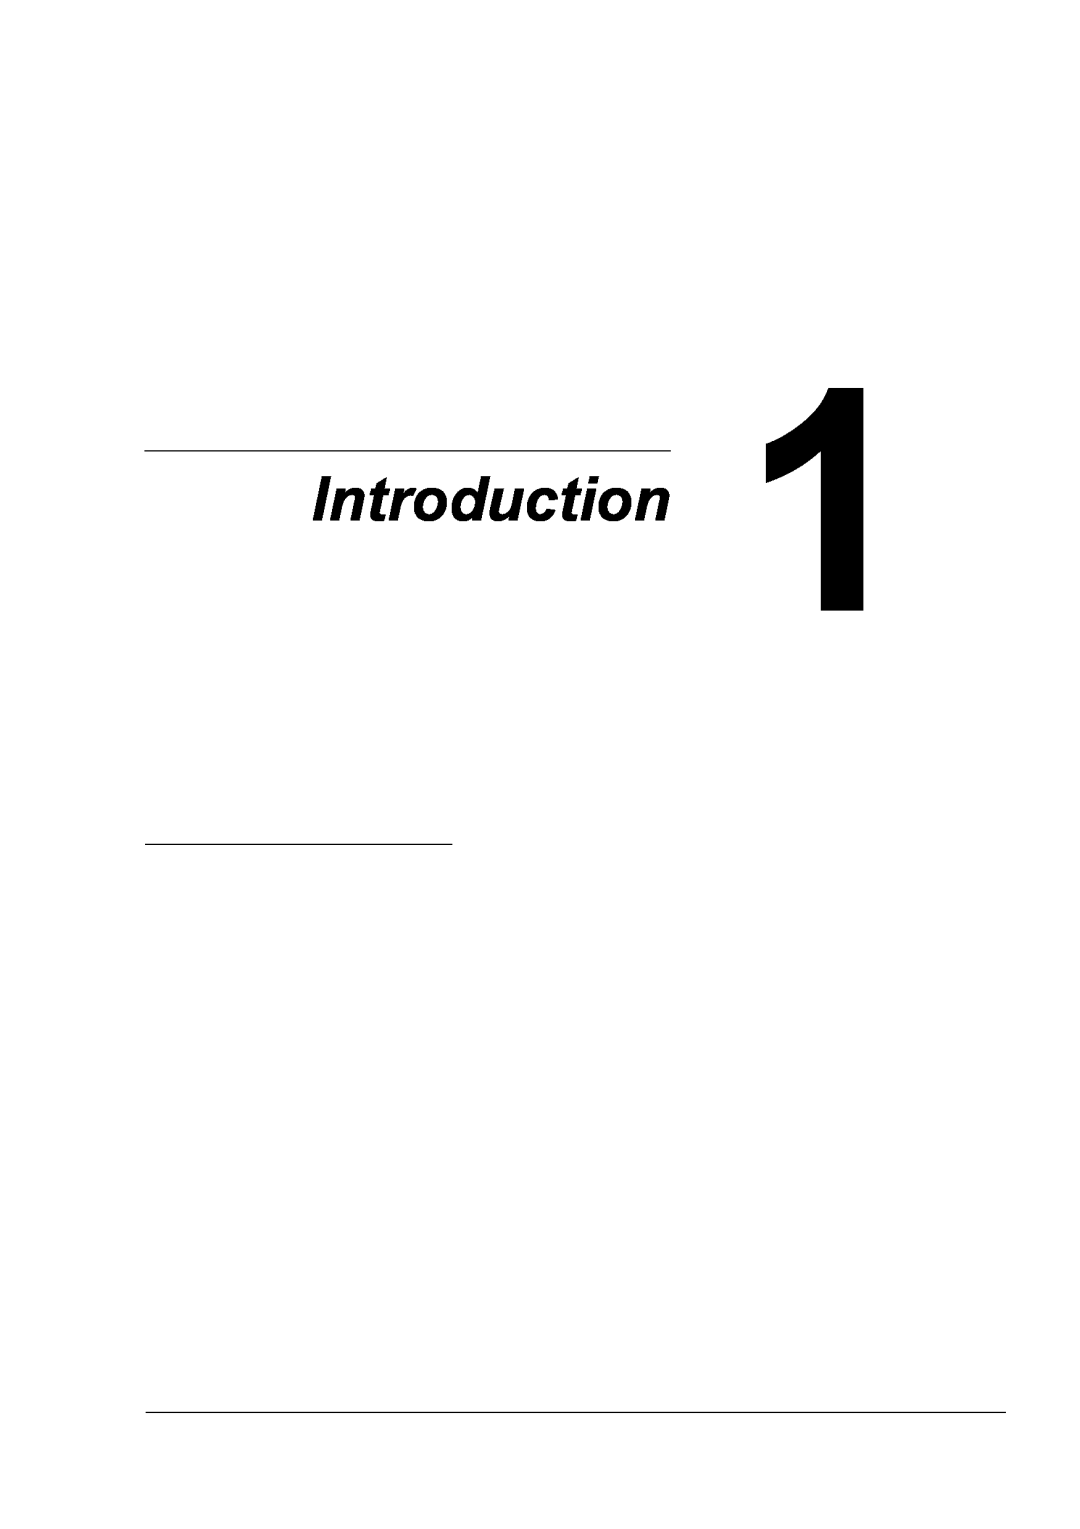 Xerox 6120 manual Introduction 